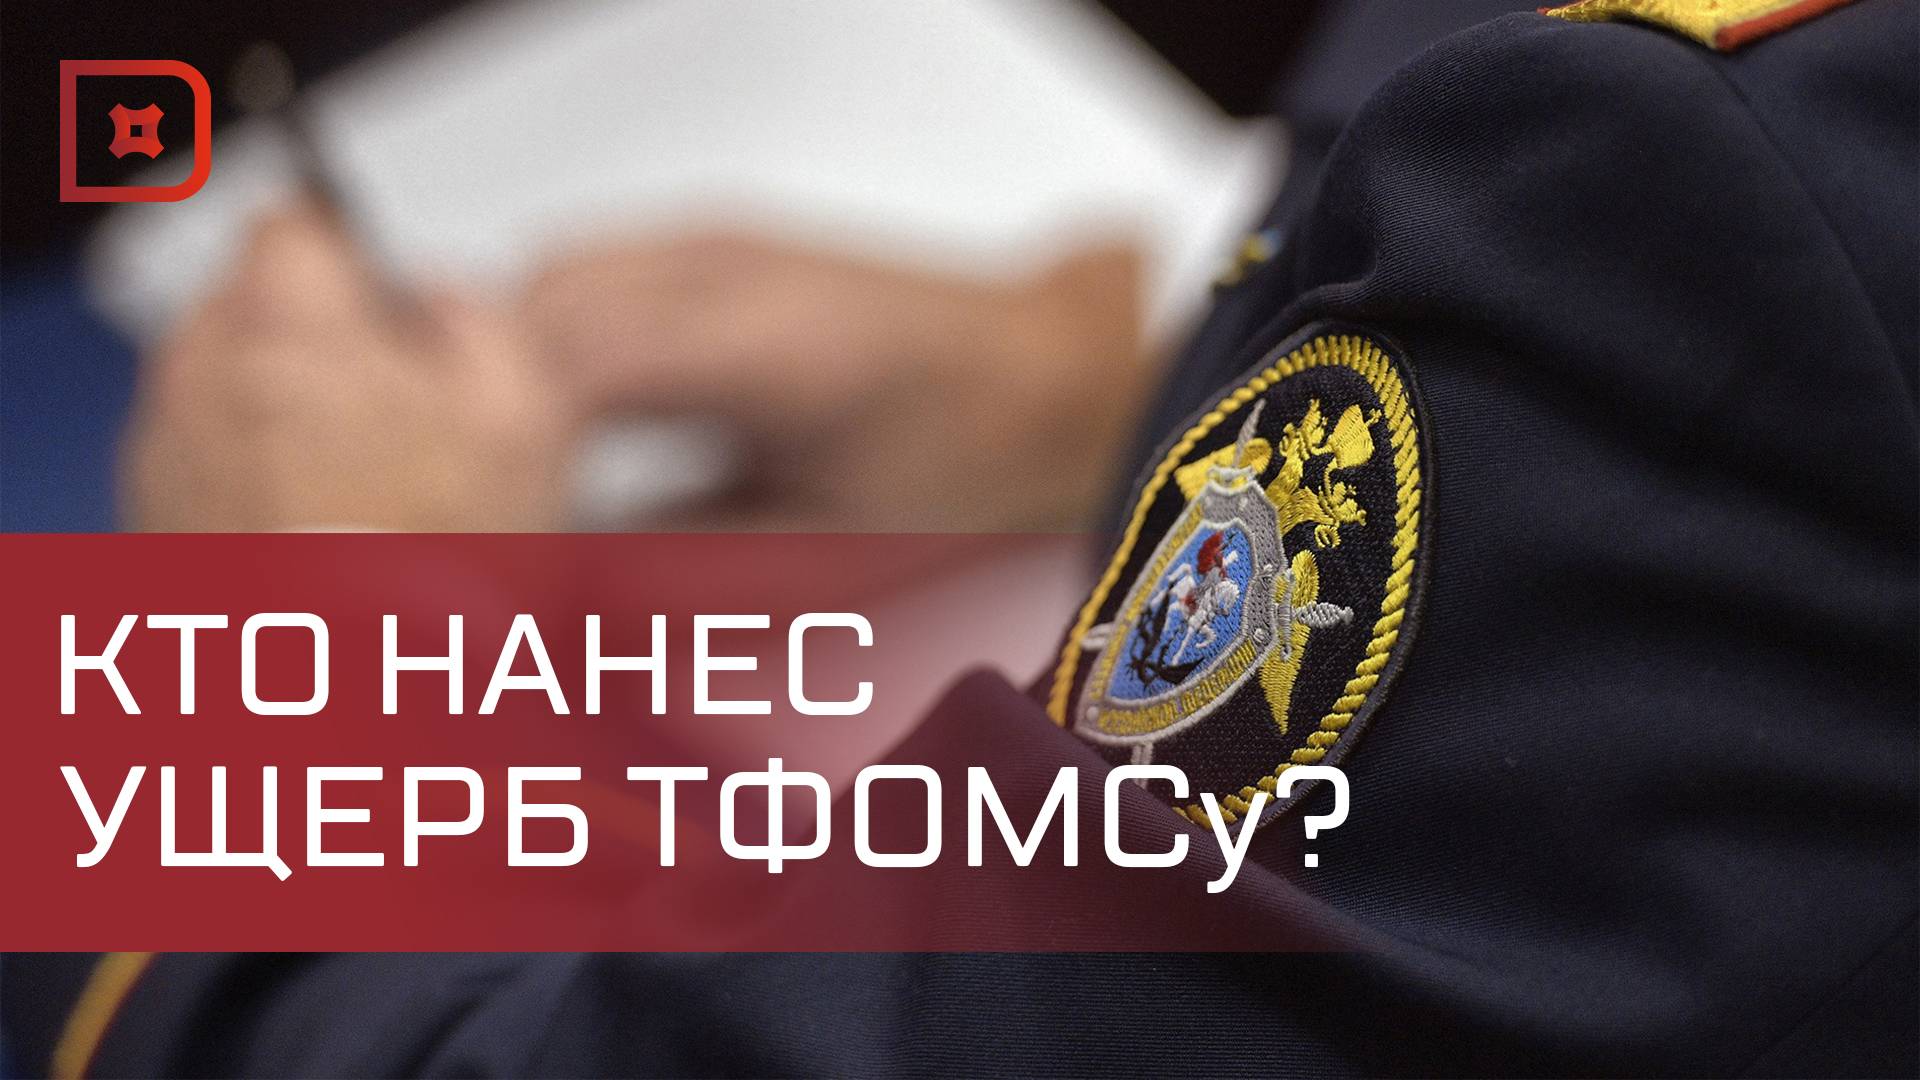 Прокуратура выявила мошенничество в Бабаюртовской районной больнице на 1,5 млн рублей